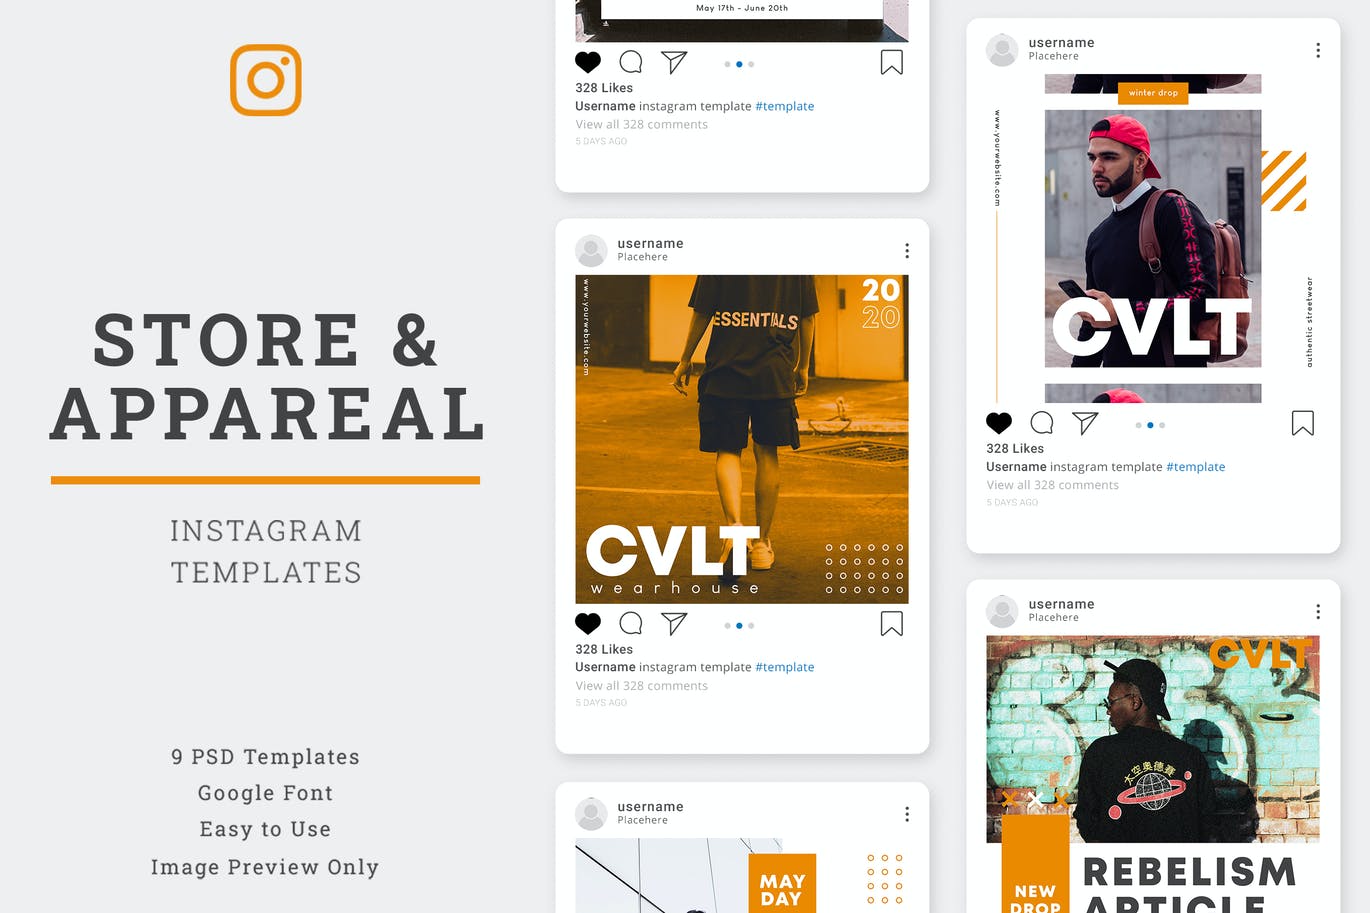 服装服饰商店社交广告促销Instagram帖子设计模板 Store & Aparel Instagram Post Template设计素材模板